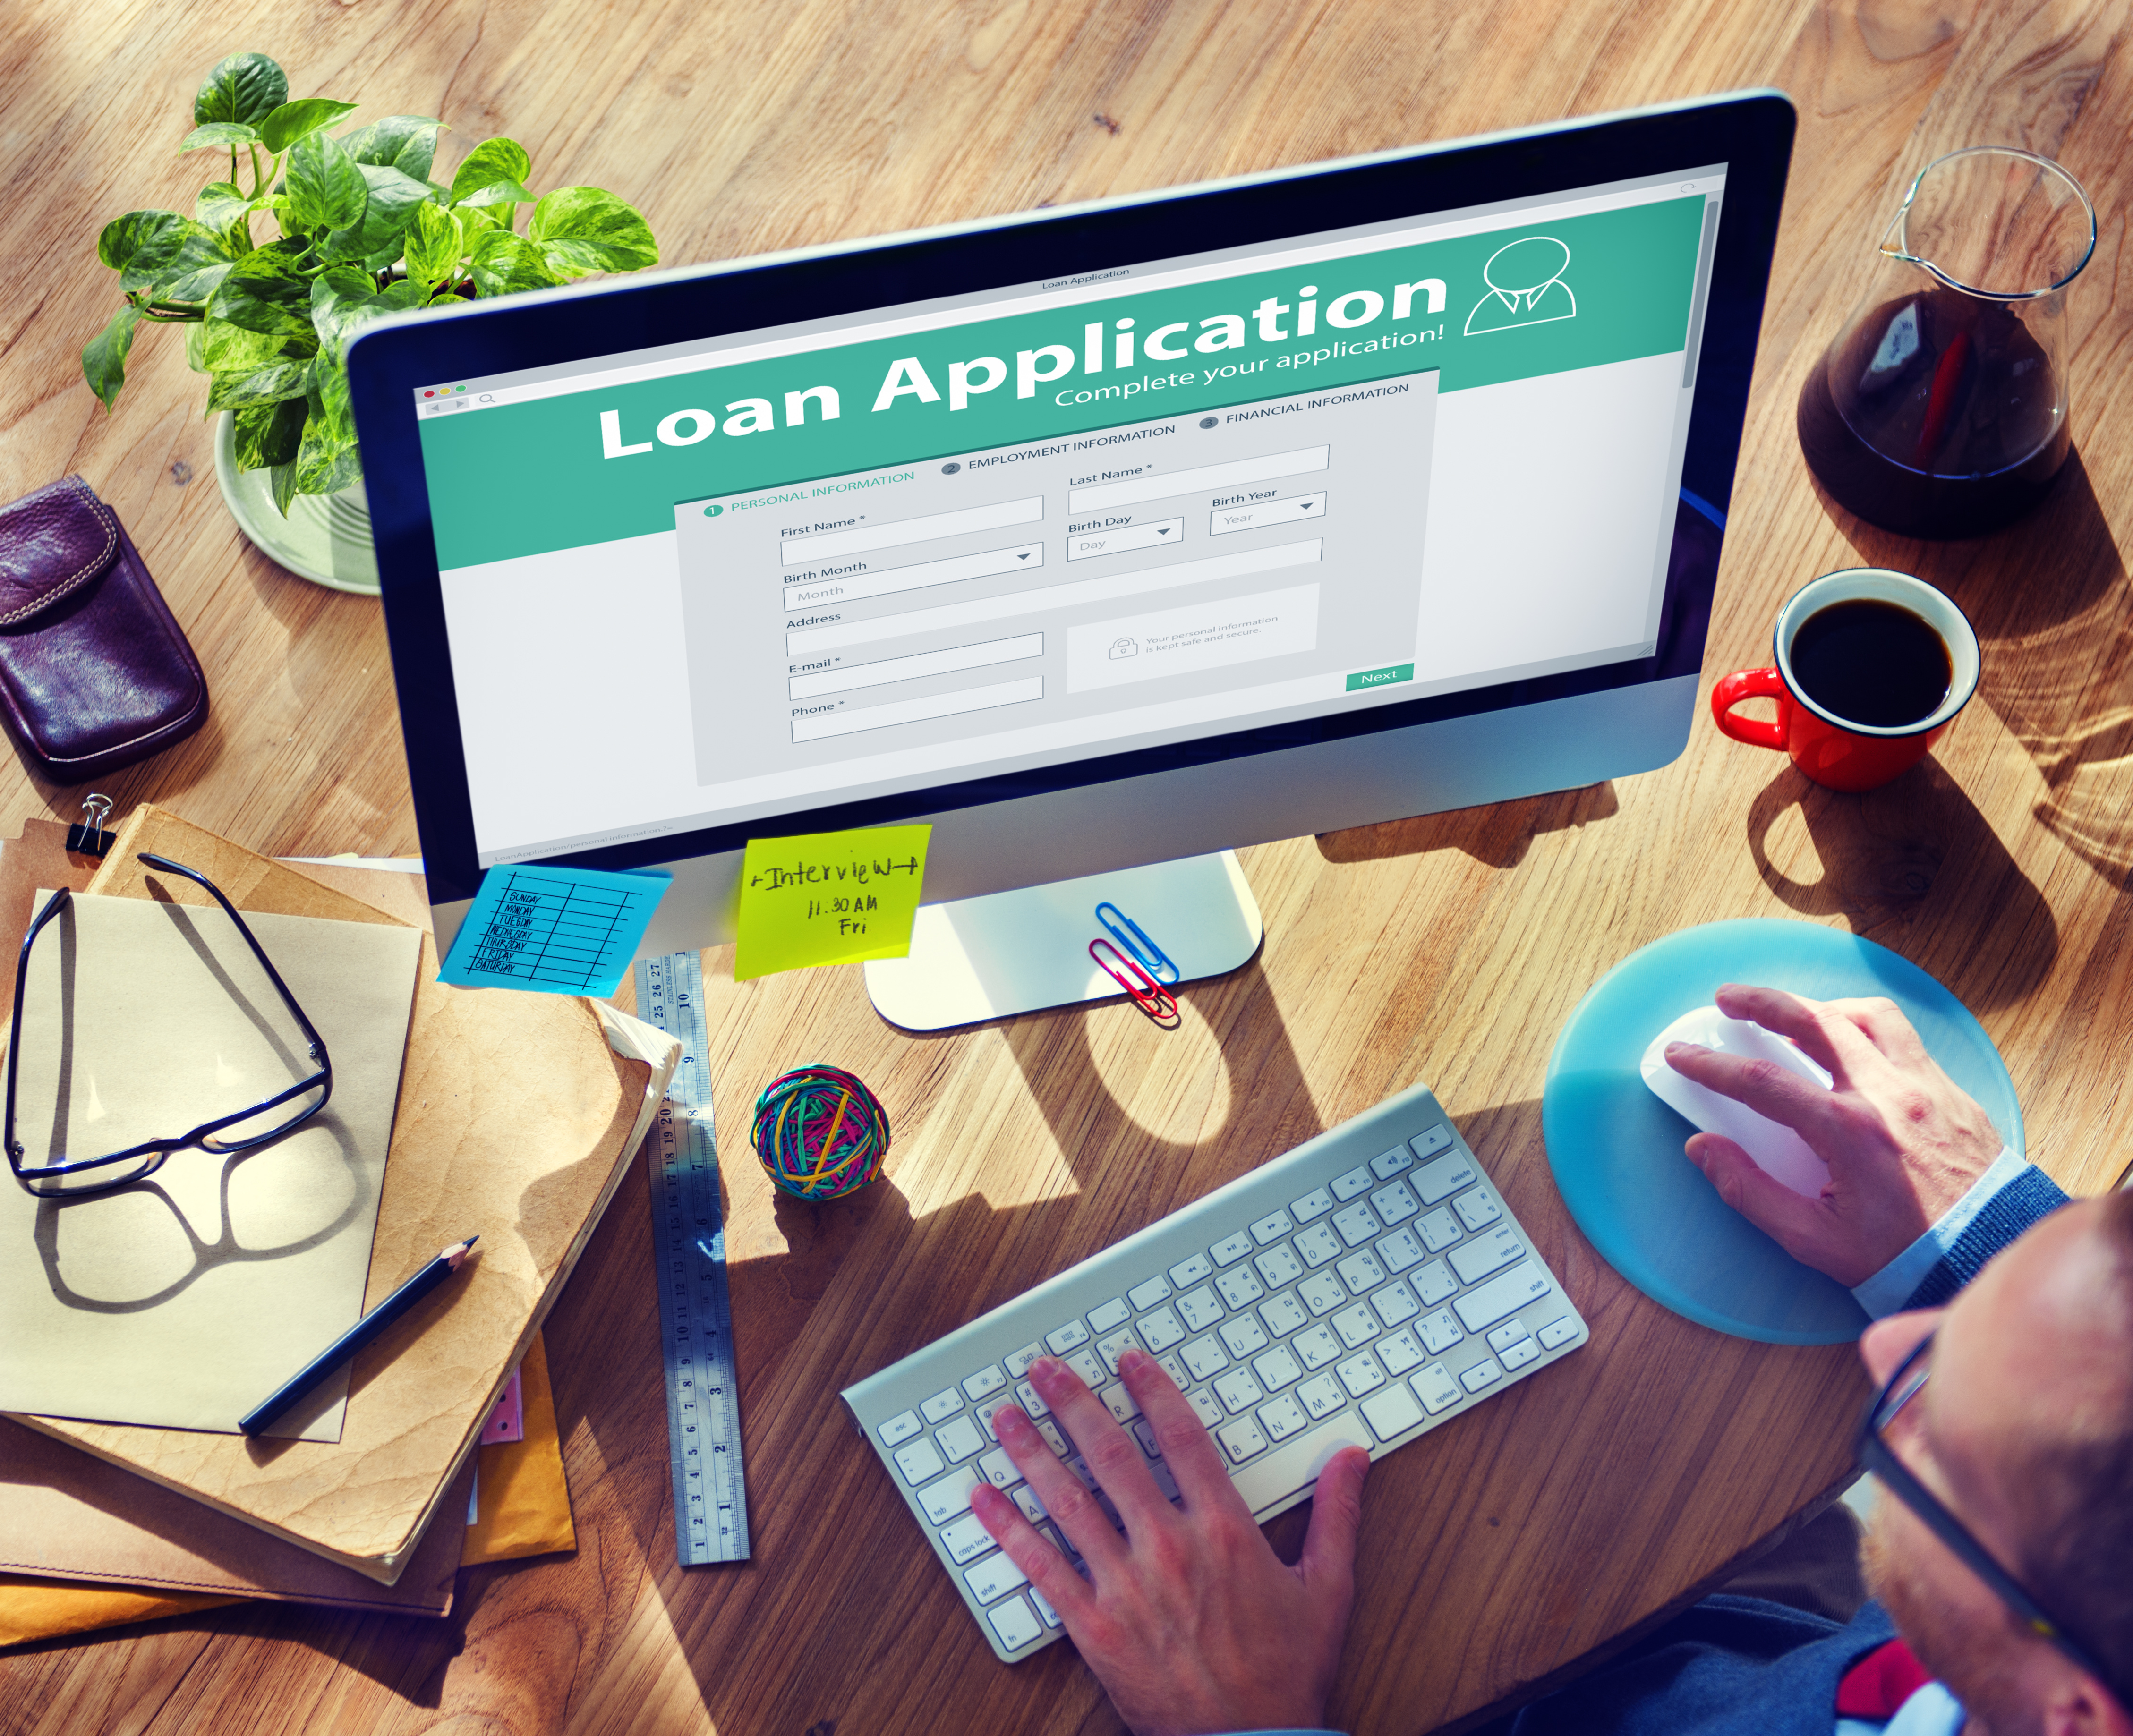 Applying for Loans Online